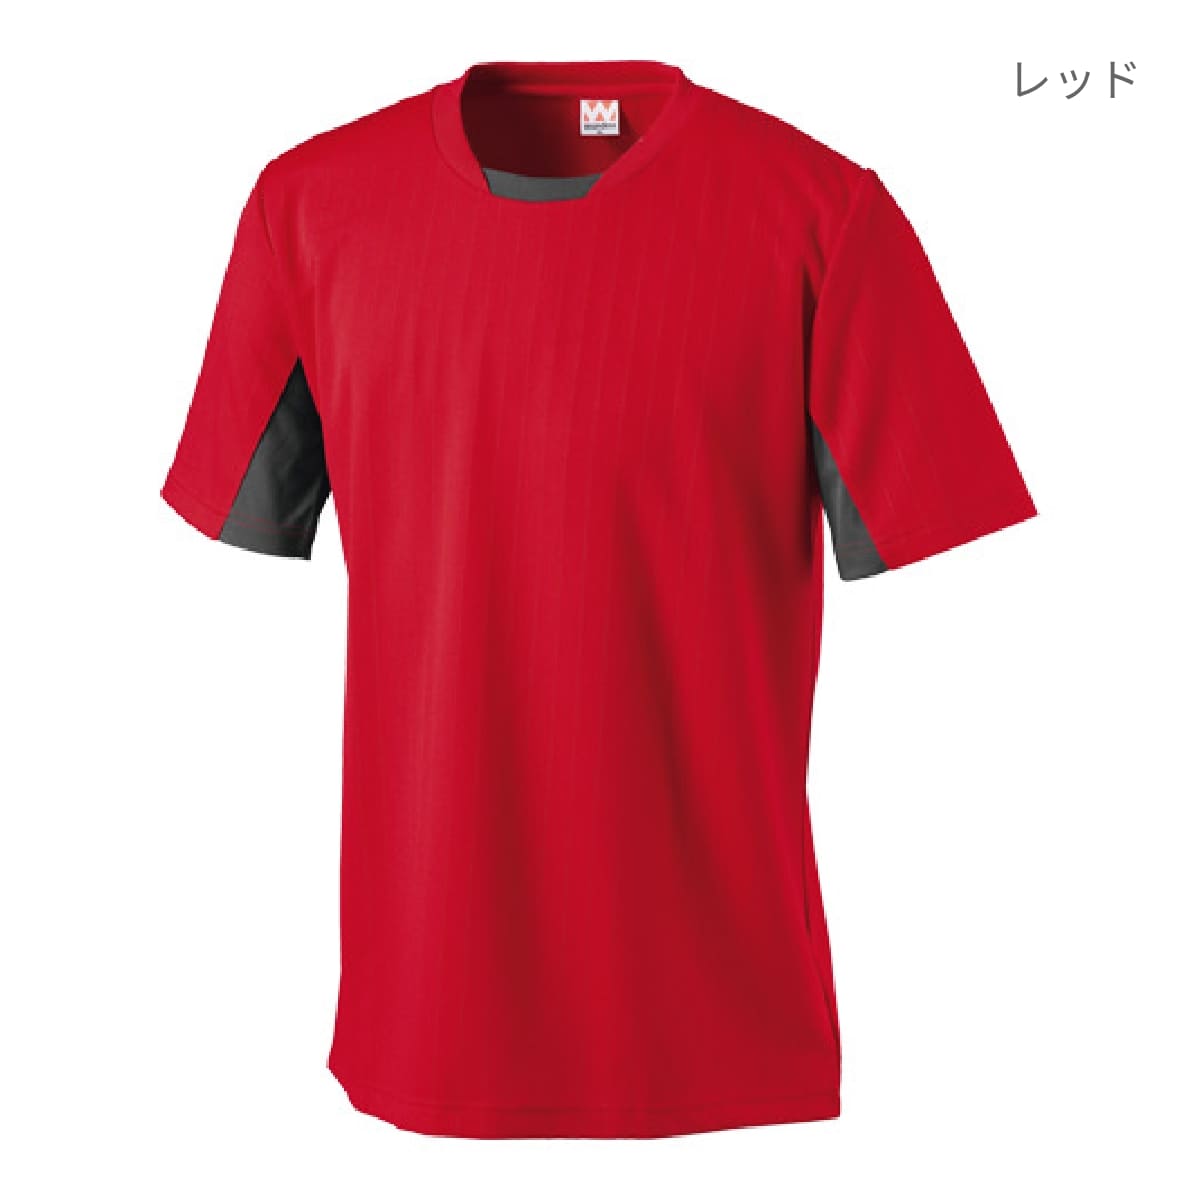 【送料無料】サッカーゲームシャツ | ユニフォーム | 1枚 | P1940 | ロイヤルブルー